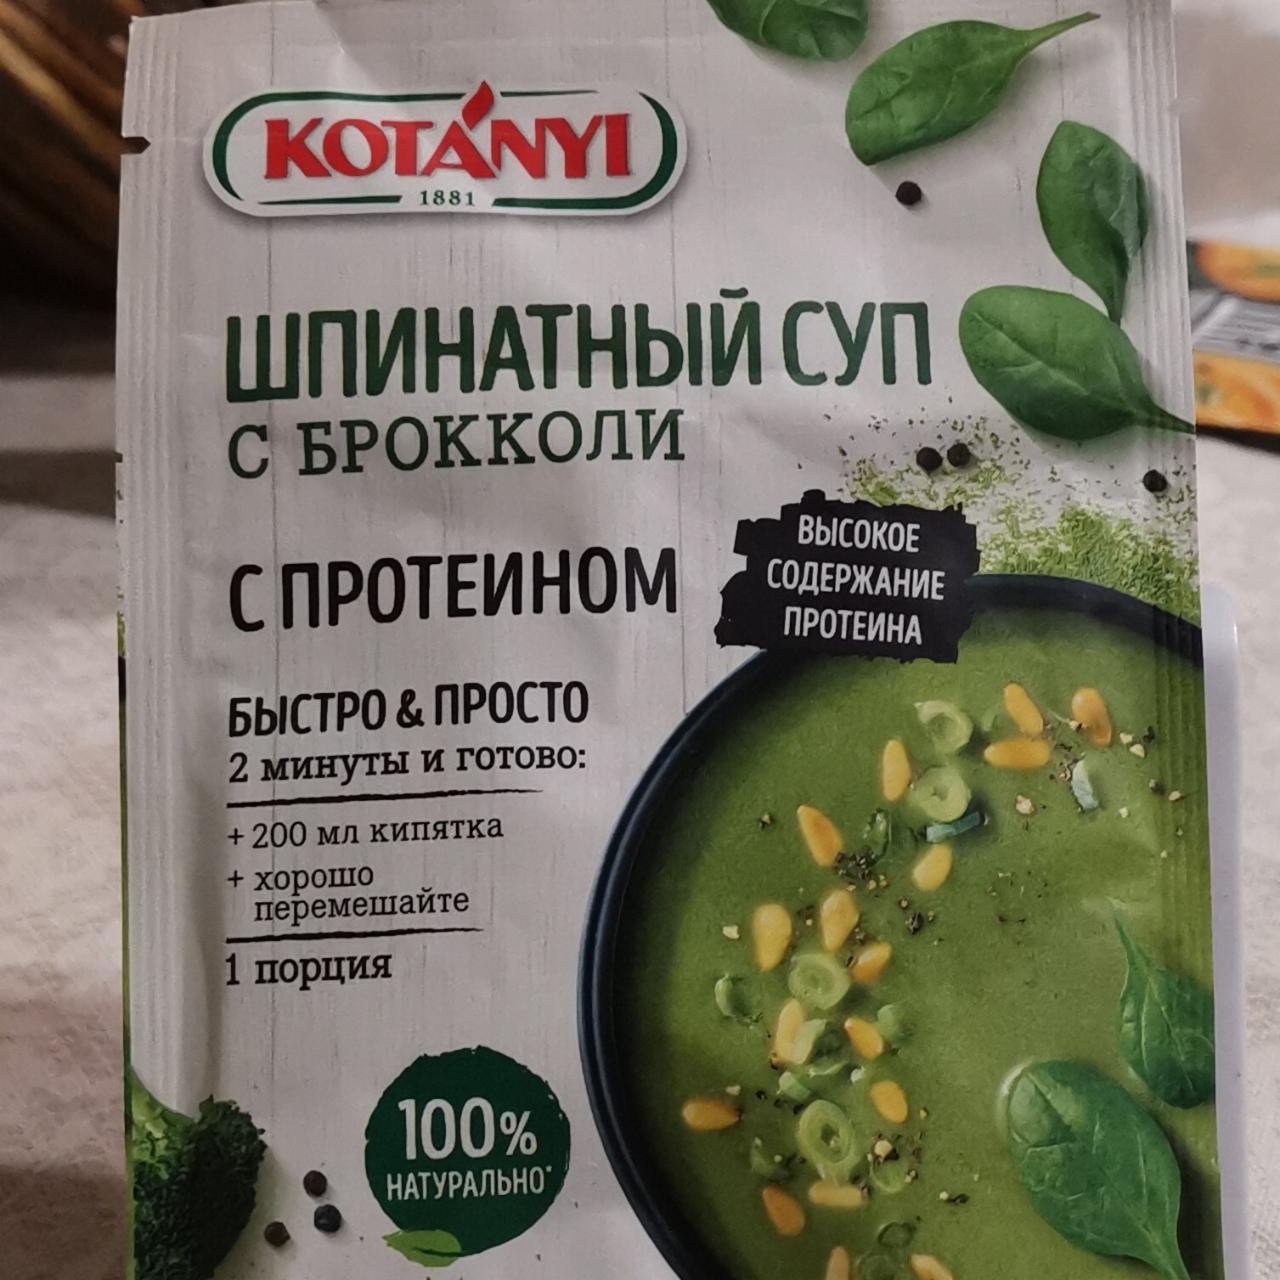 Фото - Шпинатные суп с брокколи с протеином Kotányi